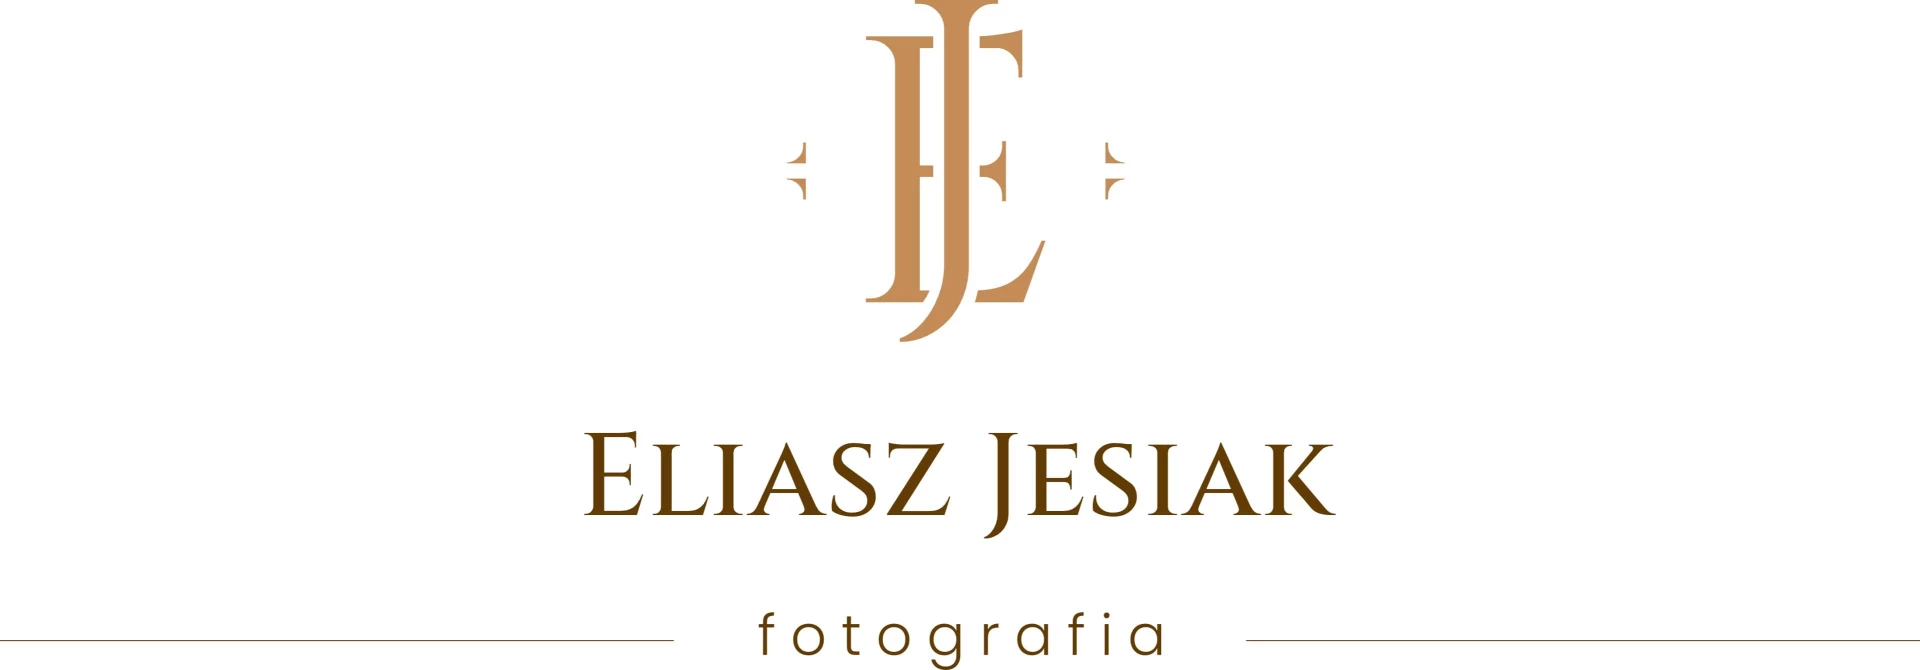 portfolio zdjecia znany fotograf eliasz-jesiak